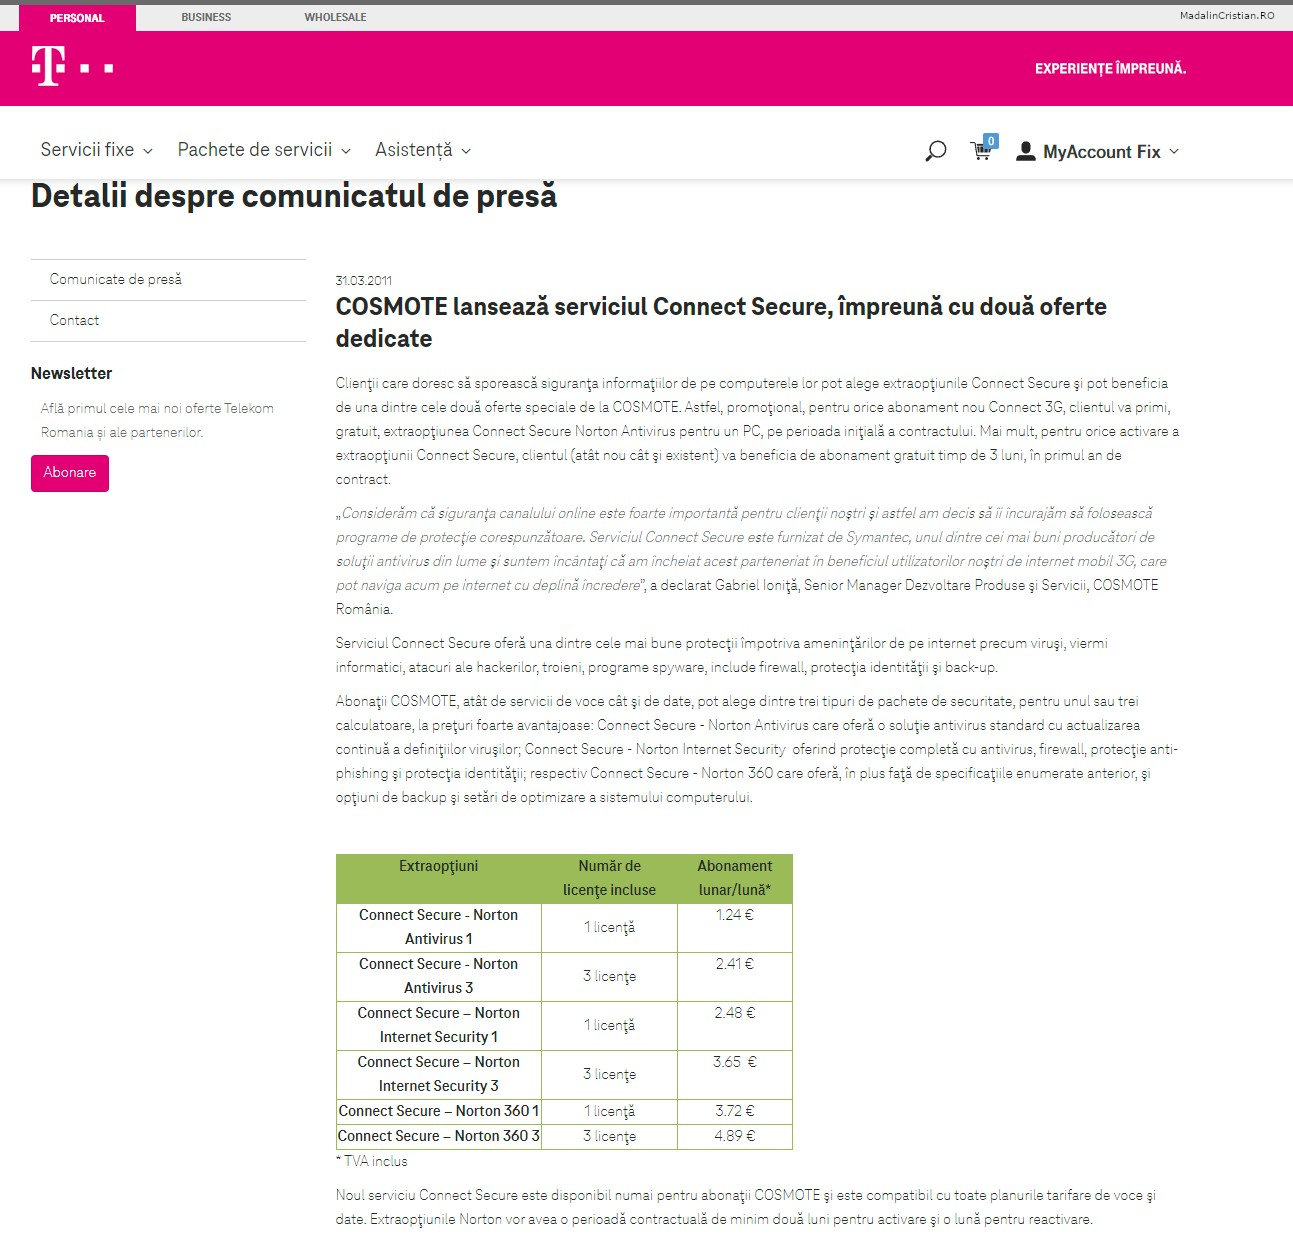 Comunicat de presa Telekom 31.03.2011 COSMOTE lanseaza serviciul Connect Secure impreuna cu doua oferte dedicate